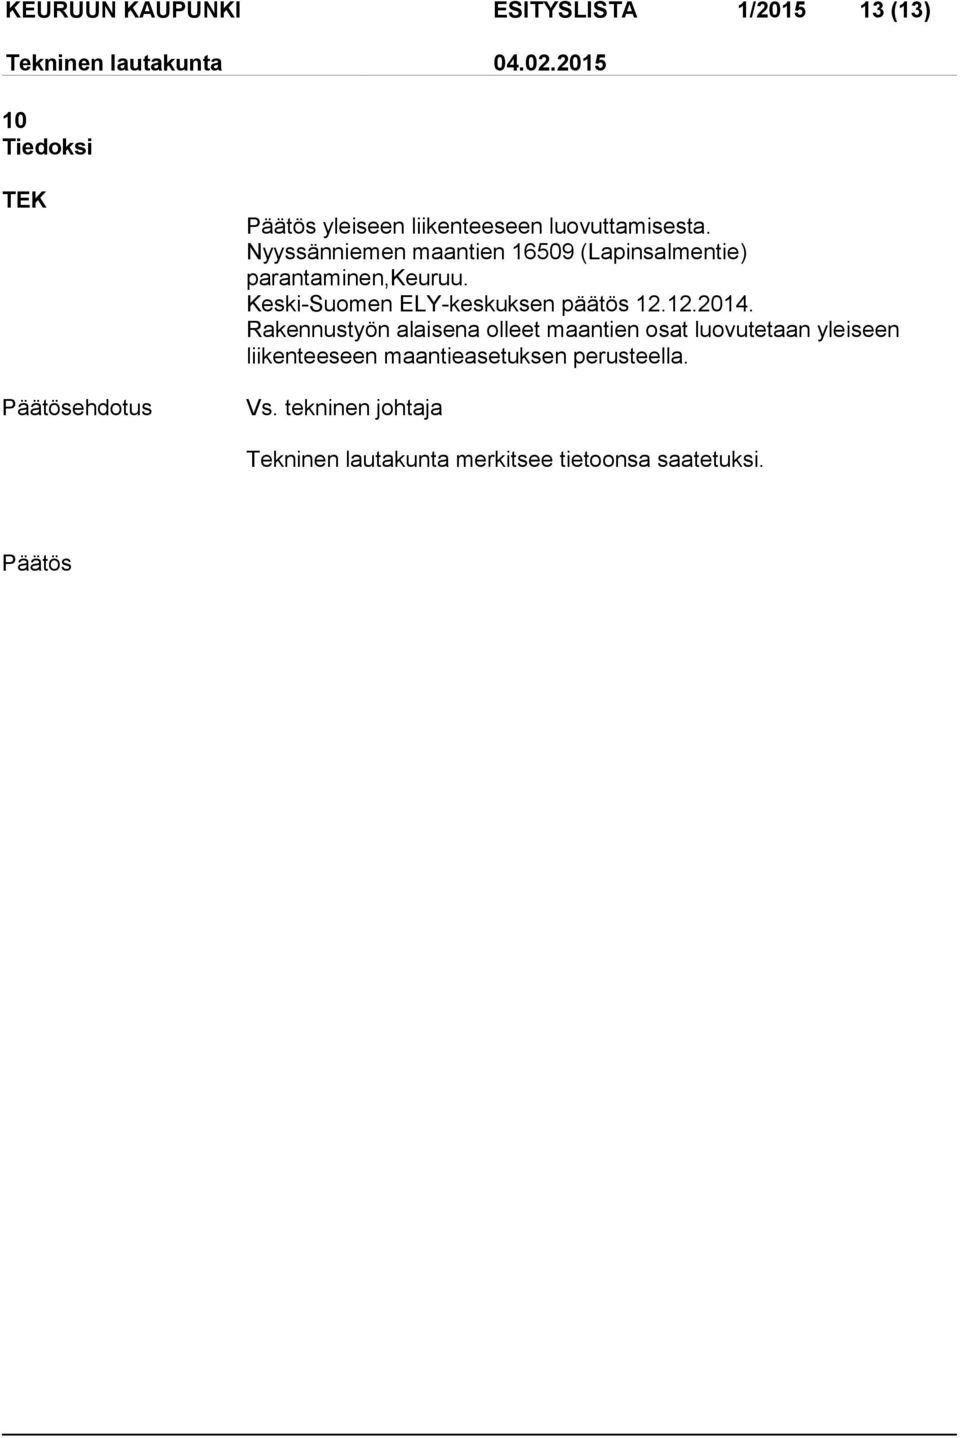 Keski-Suomen ELY-keskuksen päätös 12.12.2014.